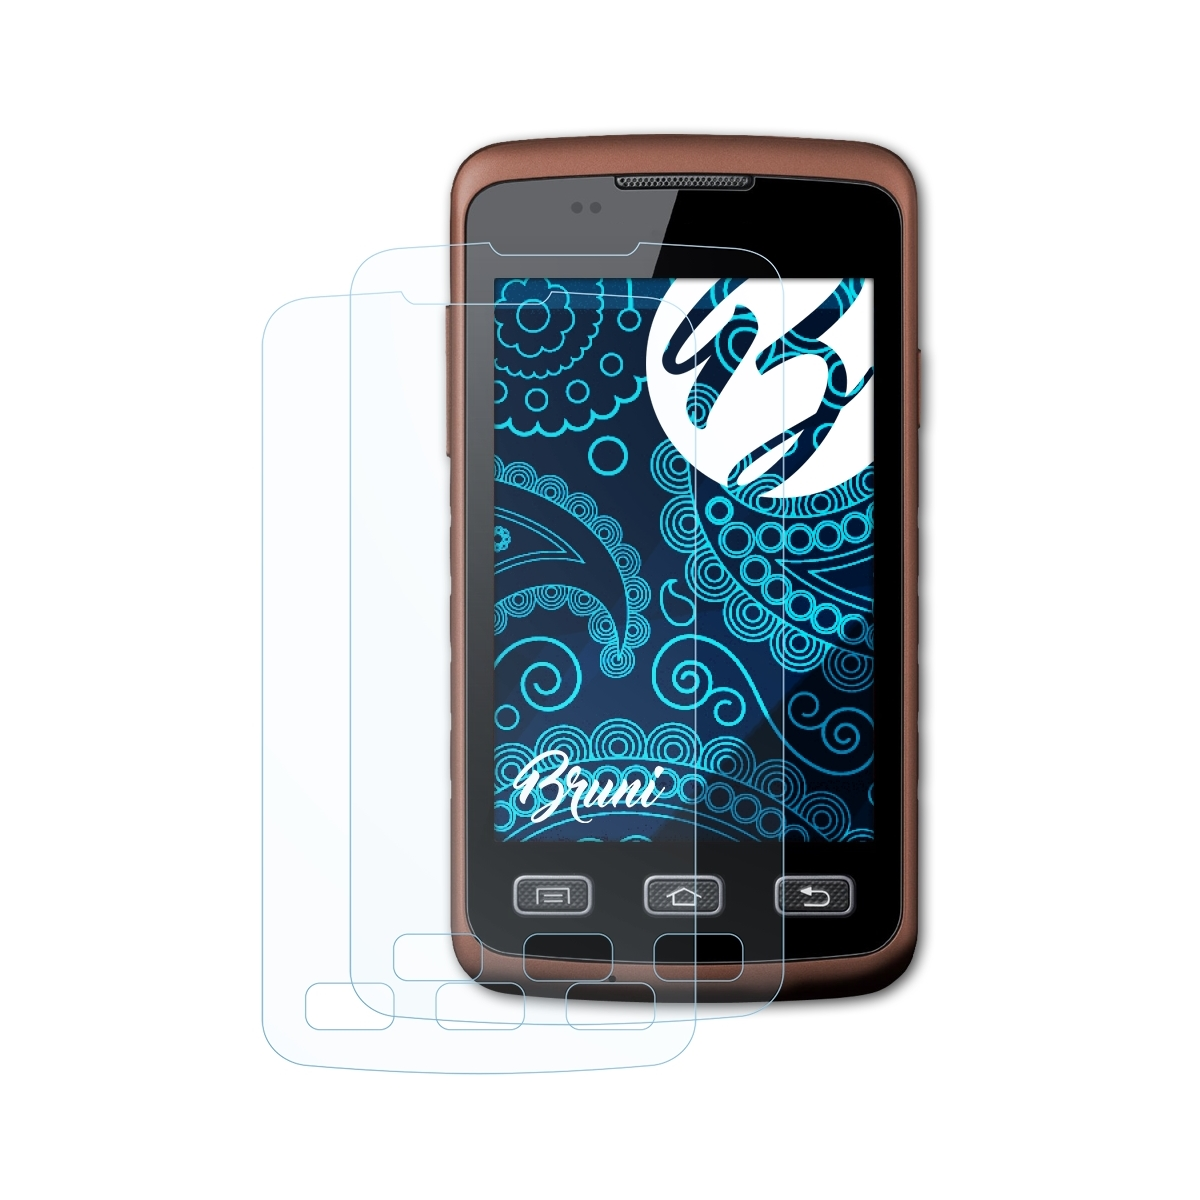 Xcover Basics-Clear Schutzfolie(für 2x (GT-S5690)) Galaxy BRUNI Samsung